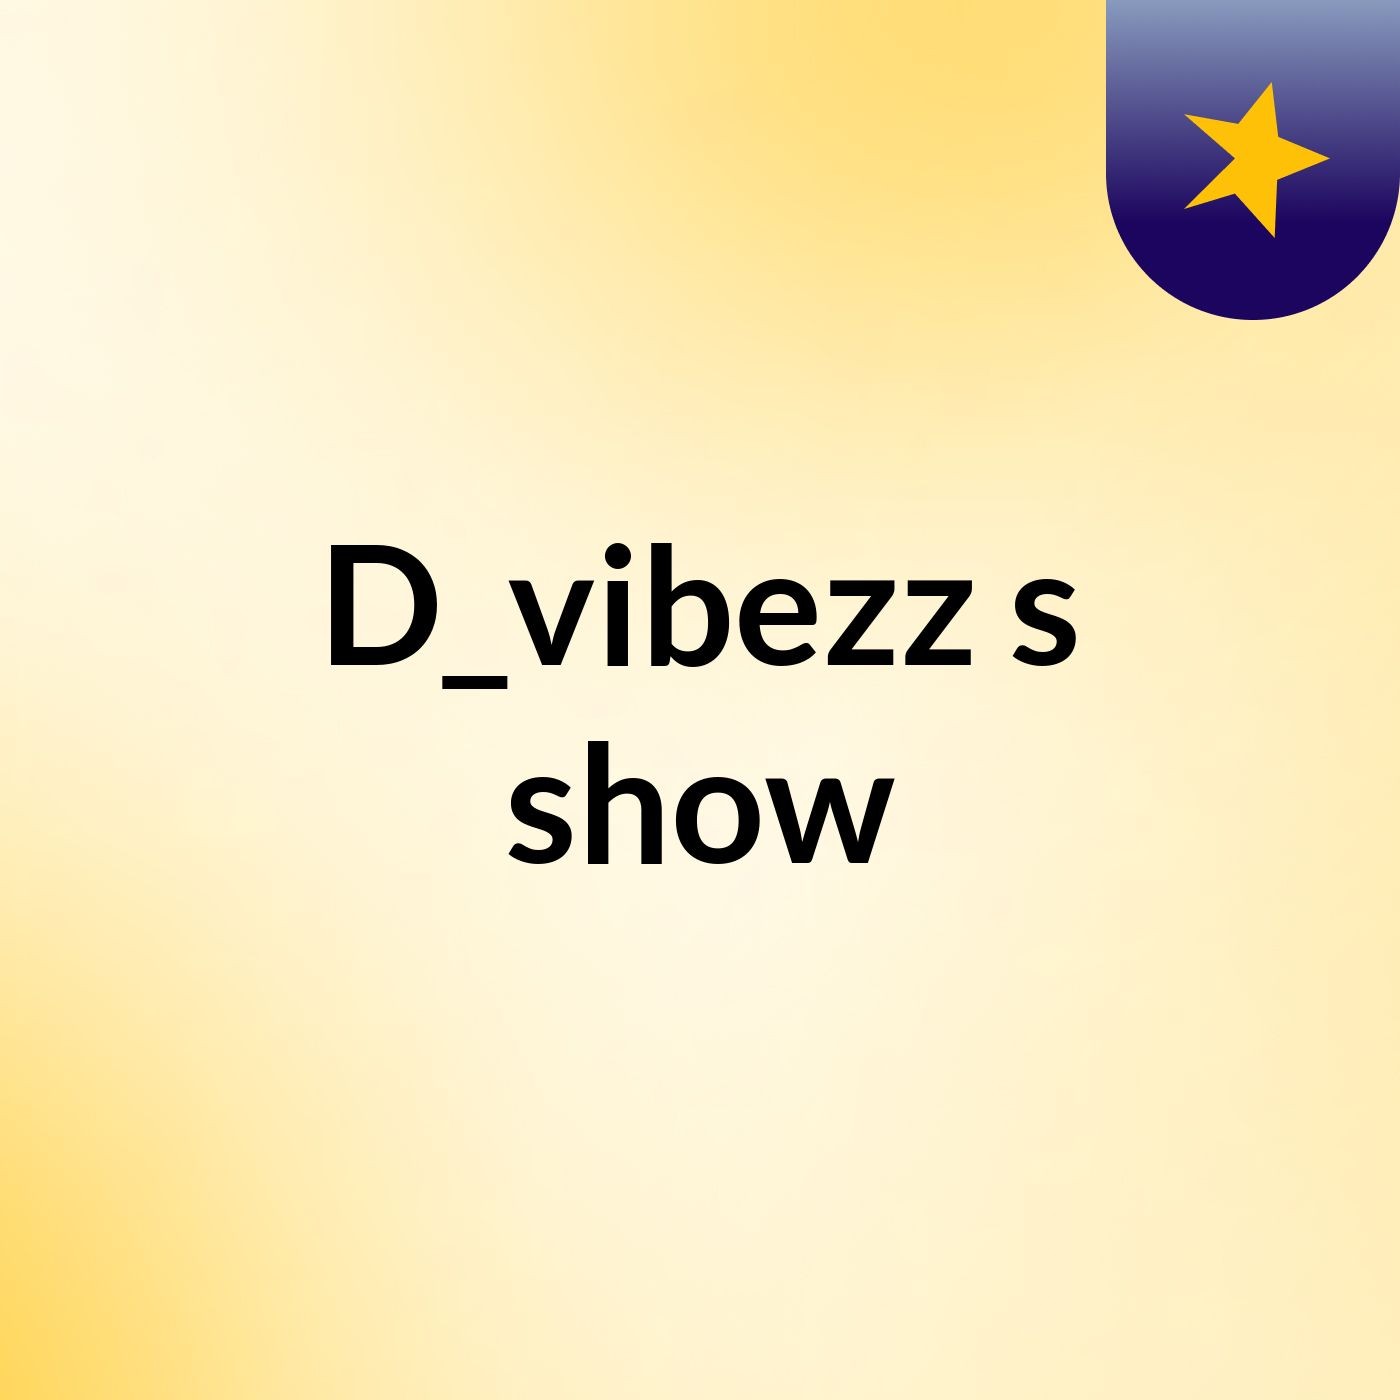 D_vibezz's show